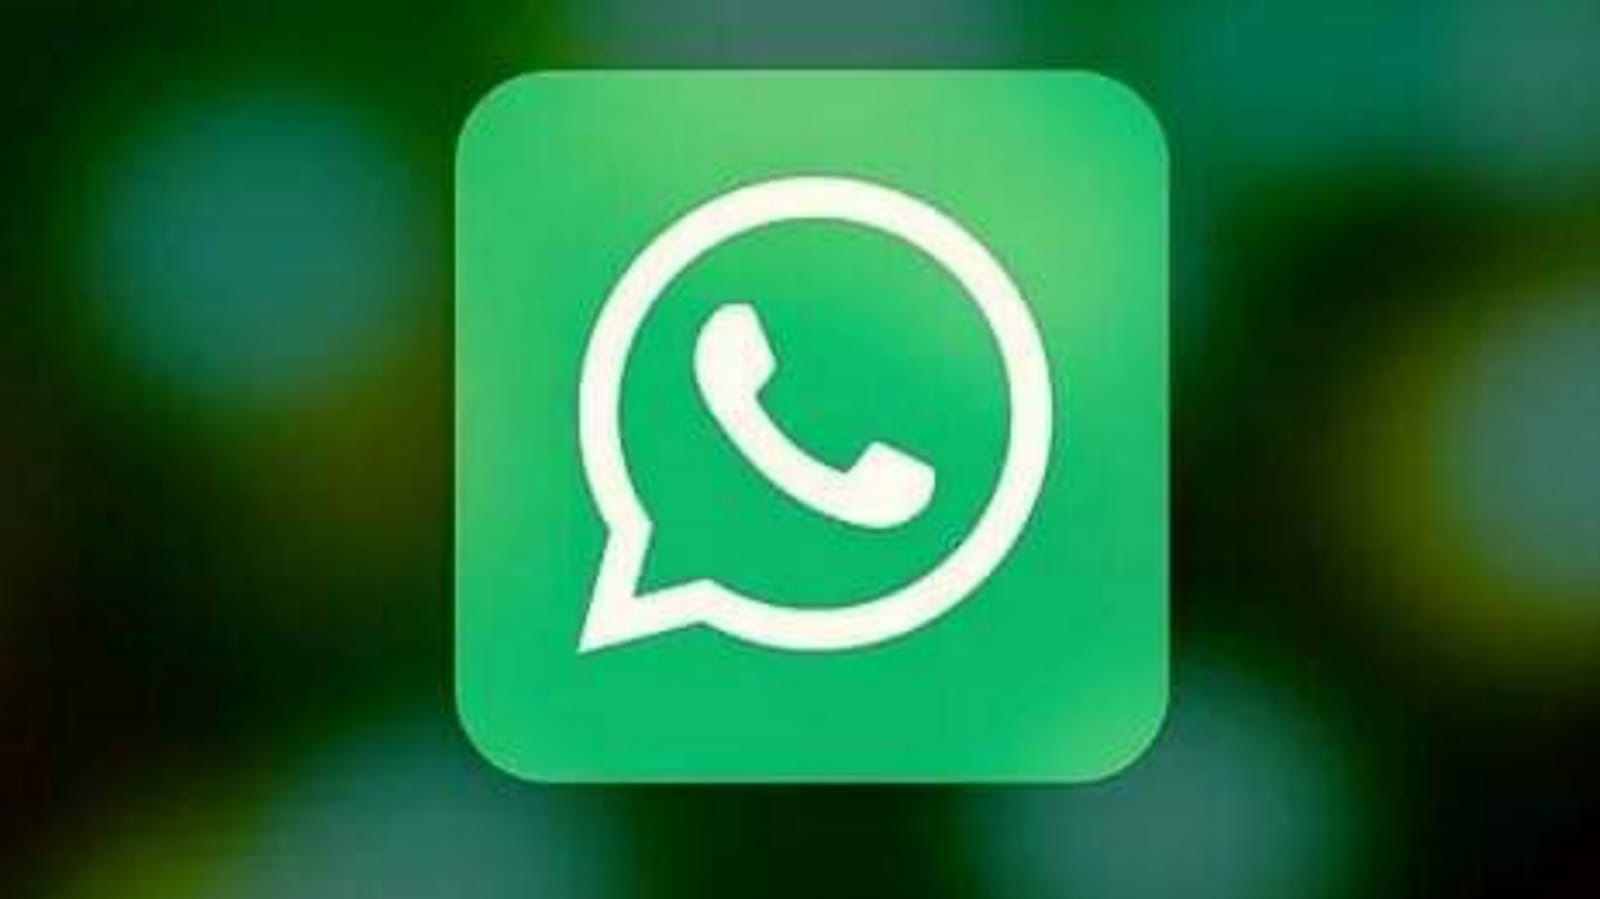 Whatsapp Planea Lanzar Un Canal Oficial Para Acceder A Trucos Y Consejos Radio Megaestación 3096